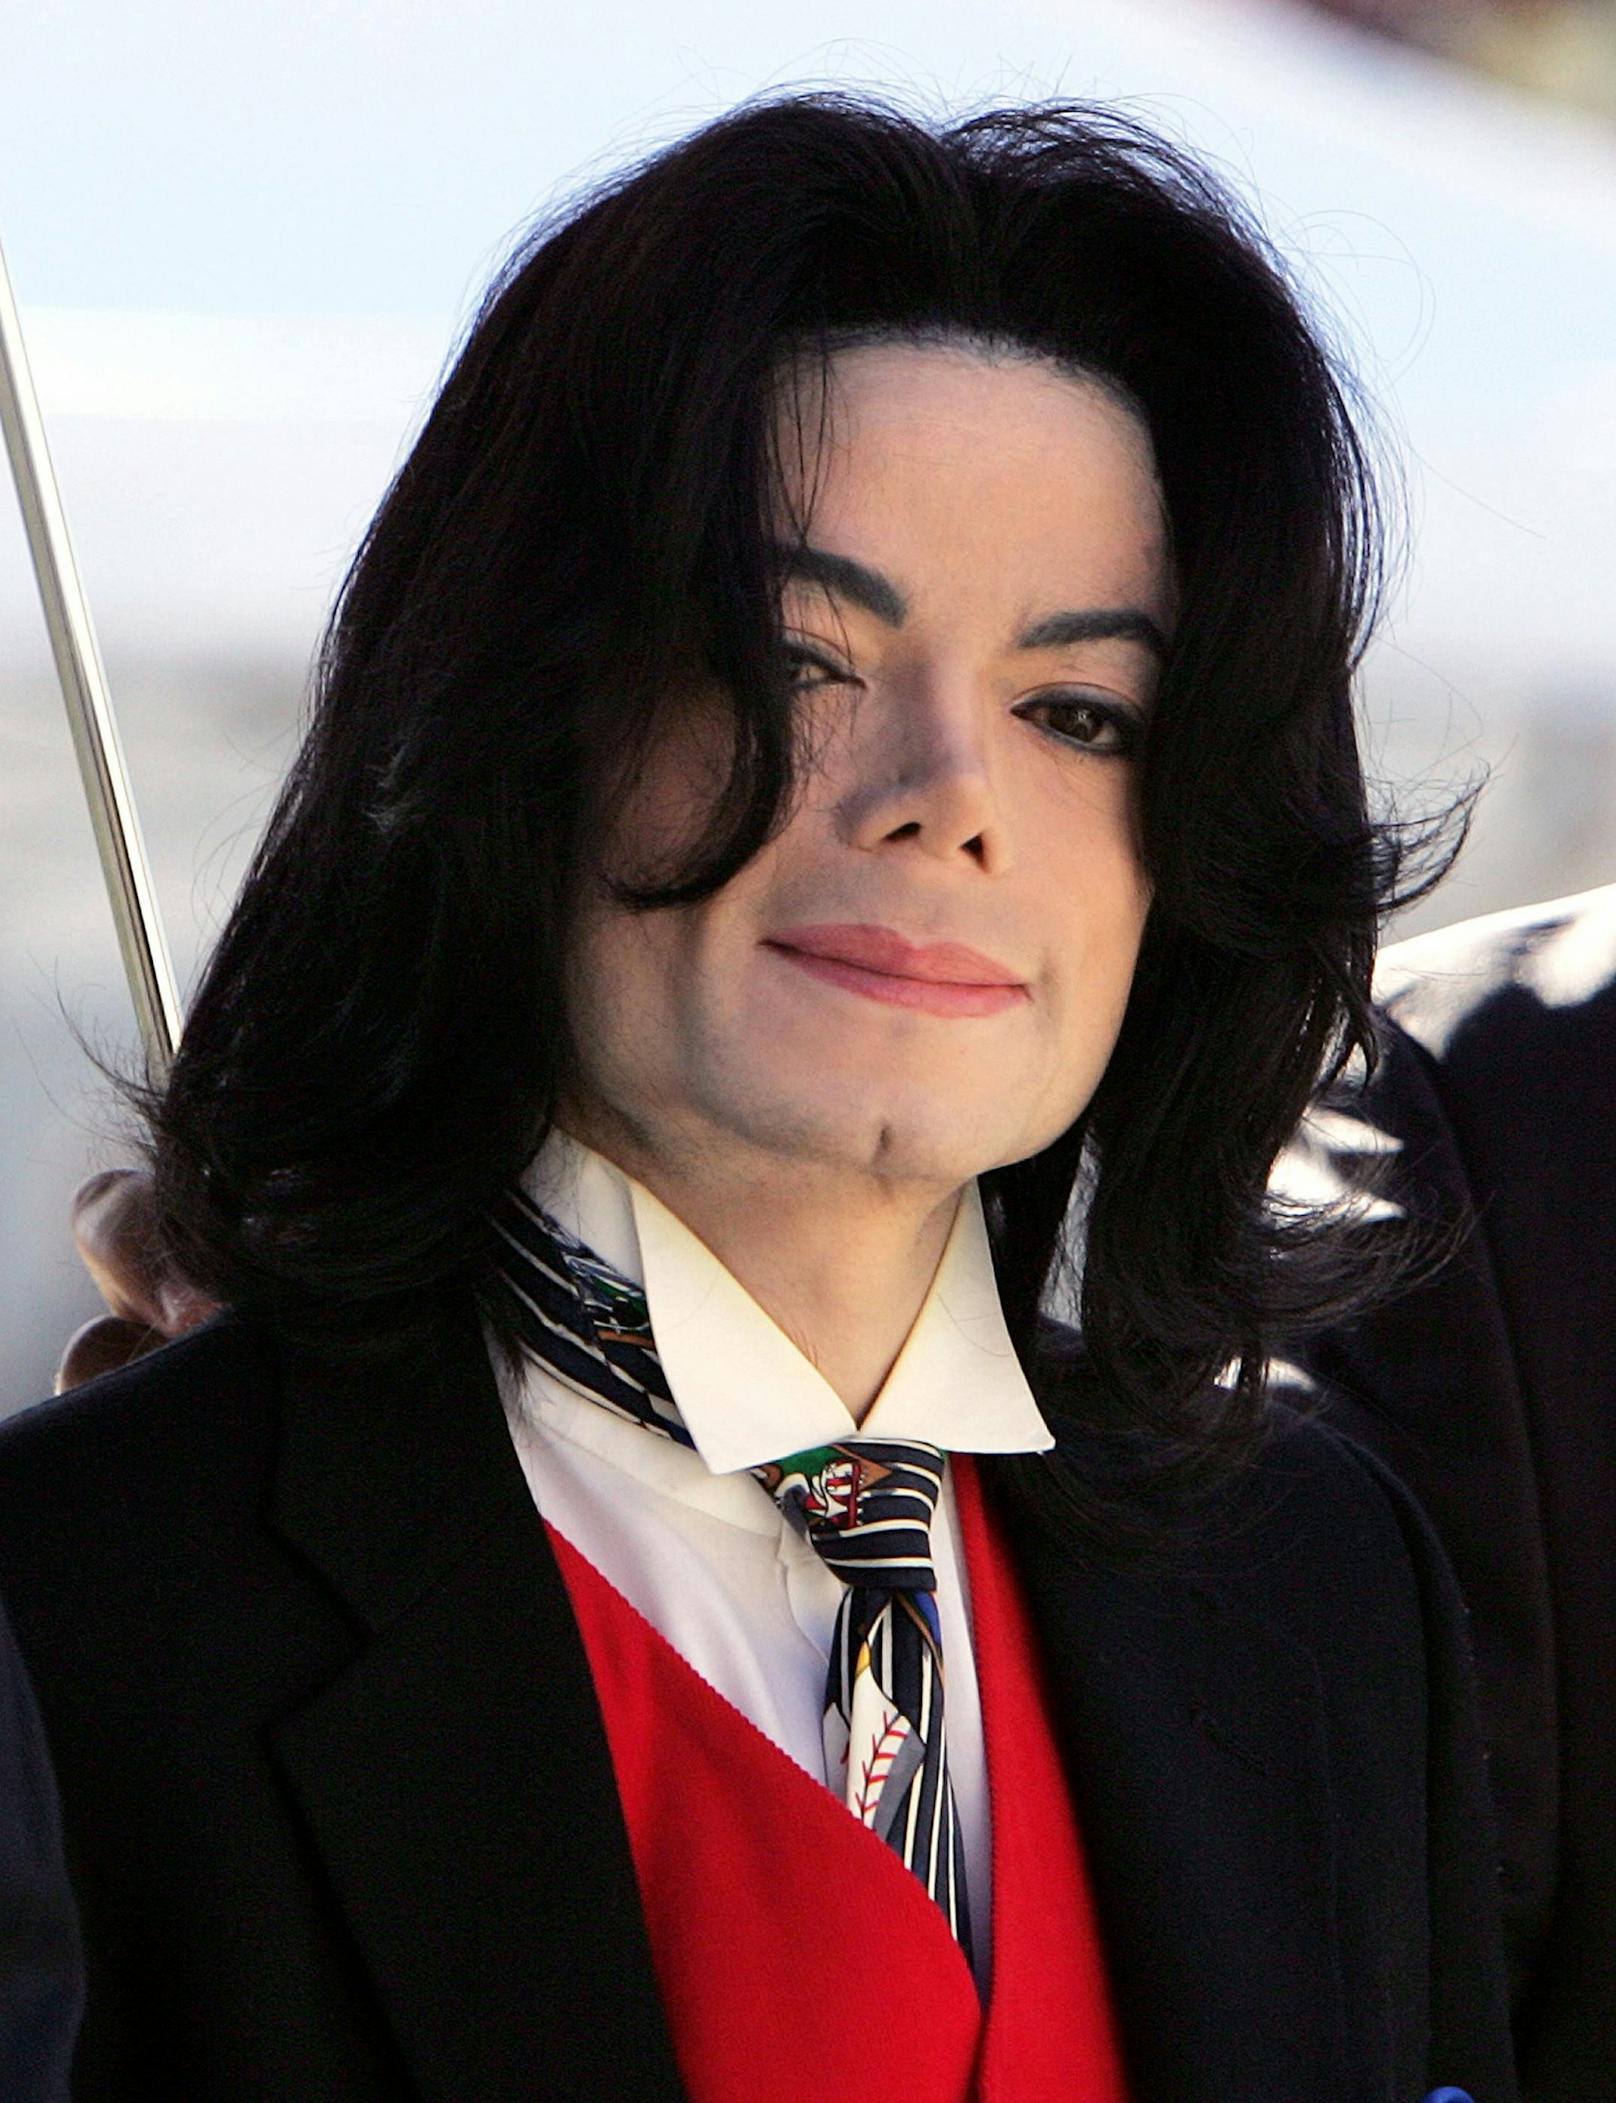 Die Karriere von Michael Jackson war jedoch auch von etlichen Negativ-Schlagzeilen geprägt.